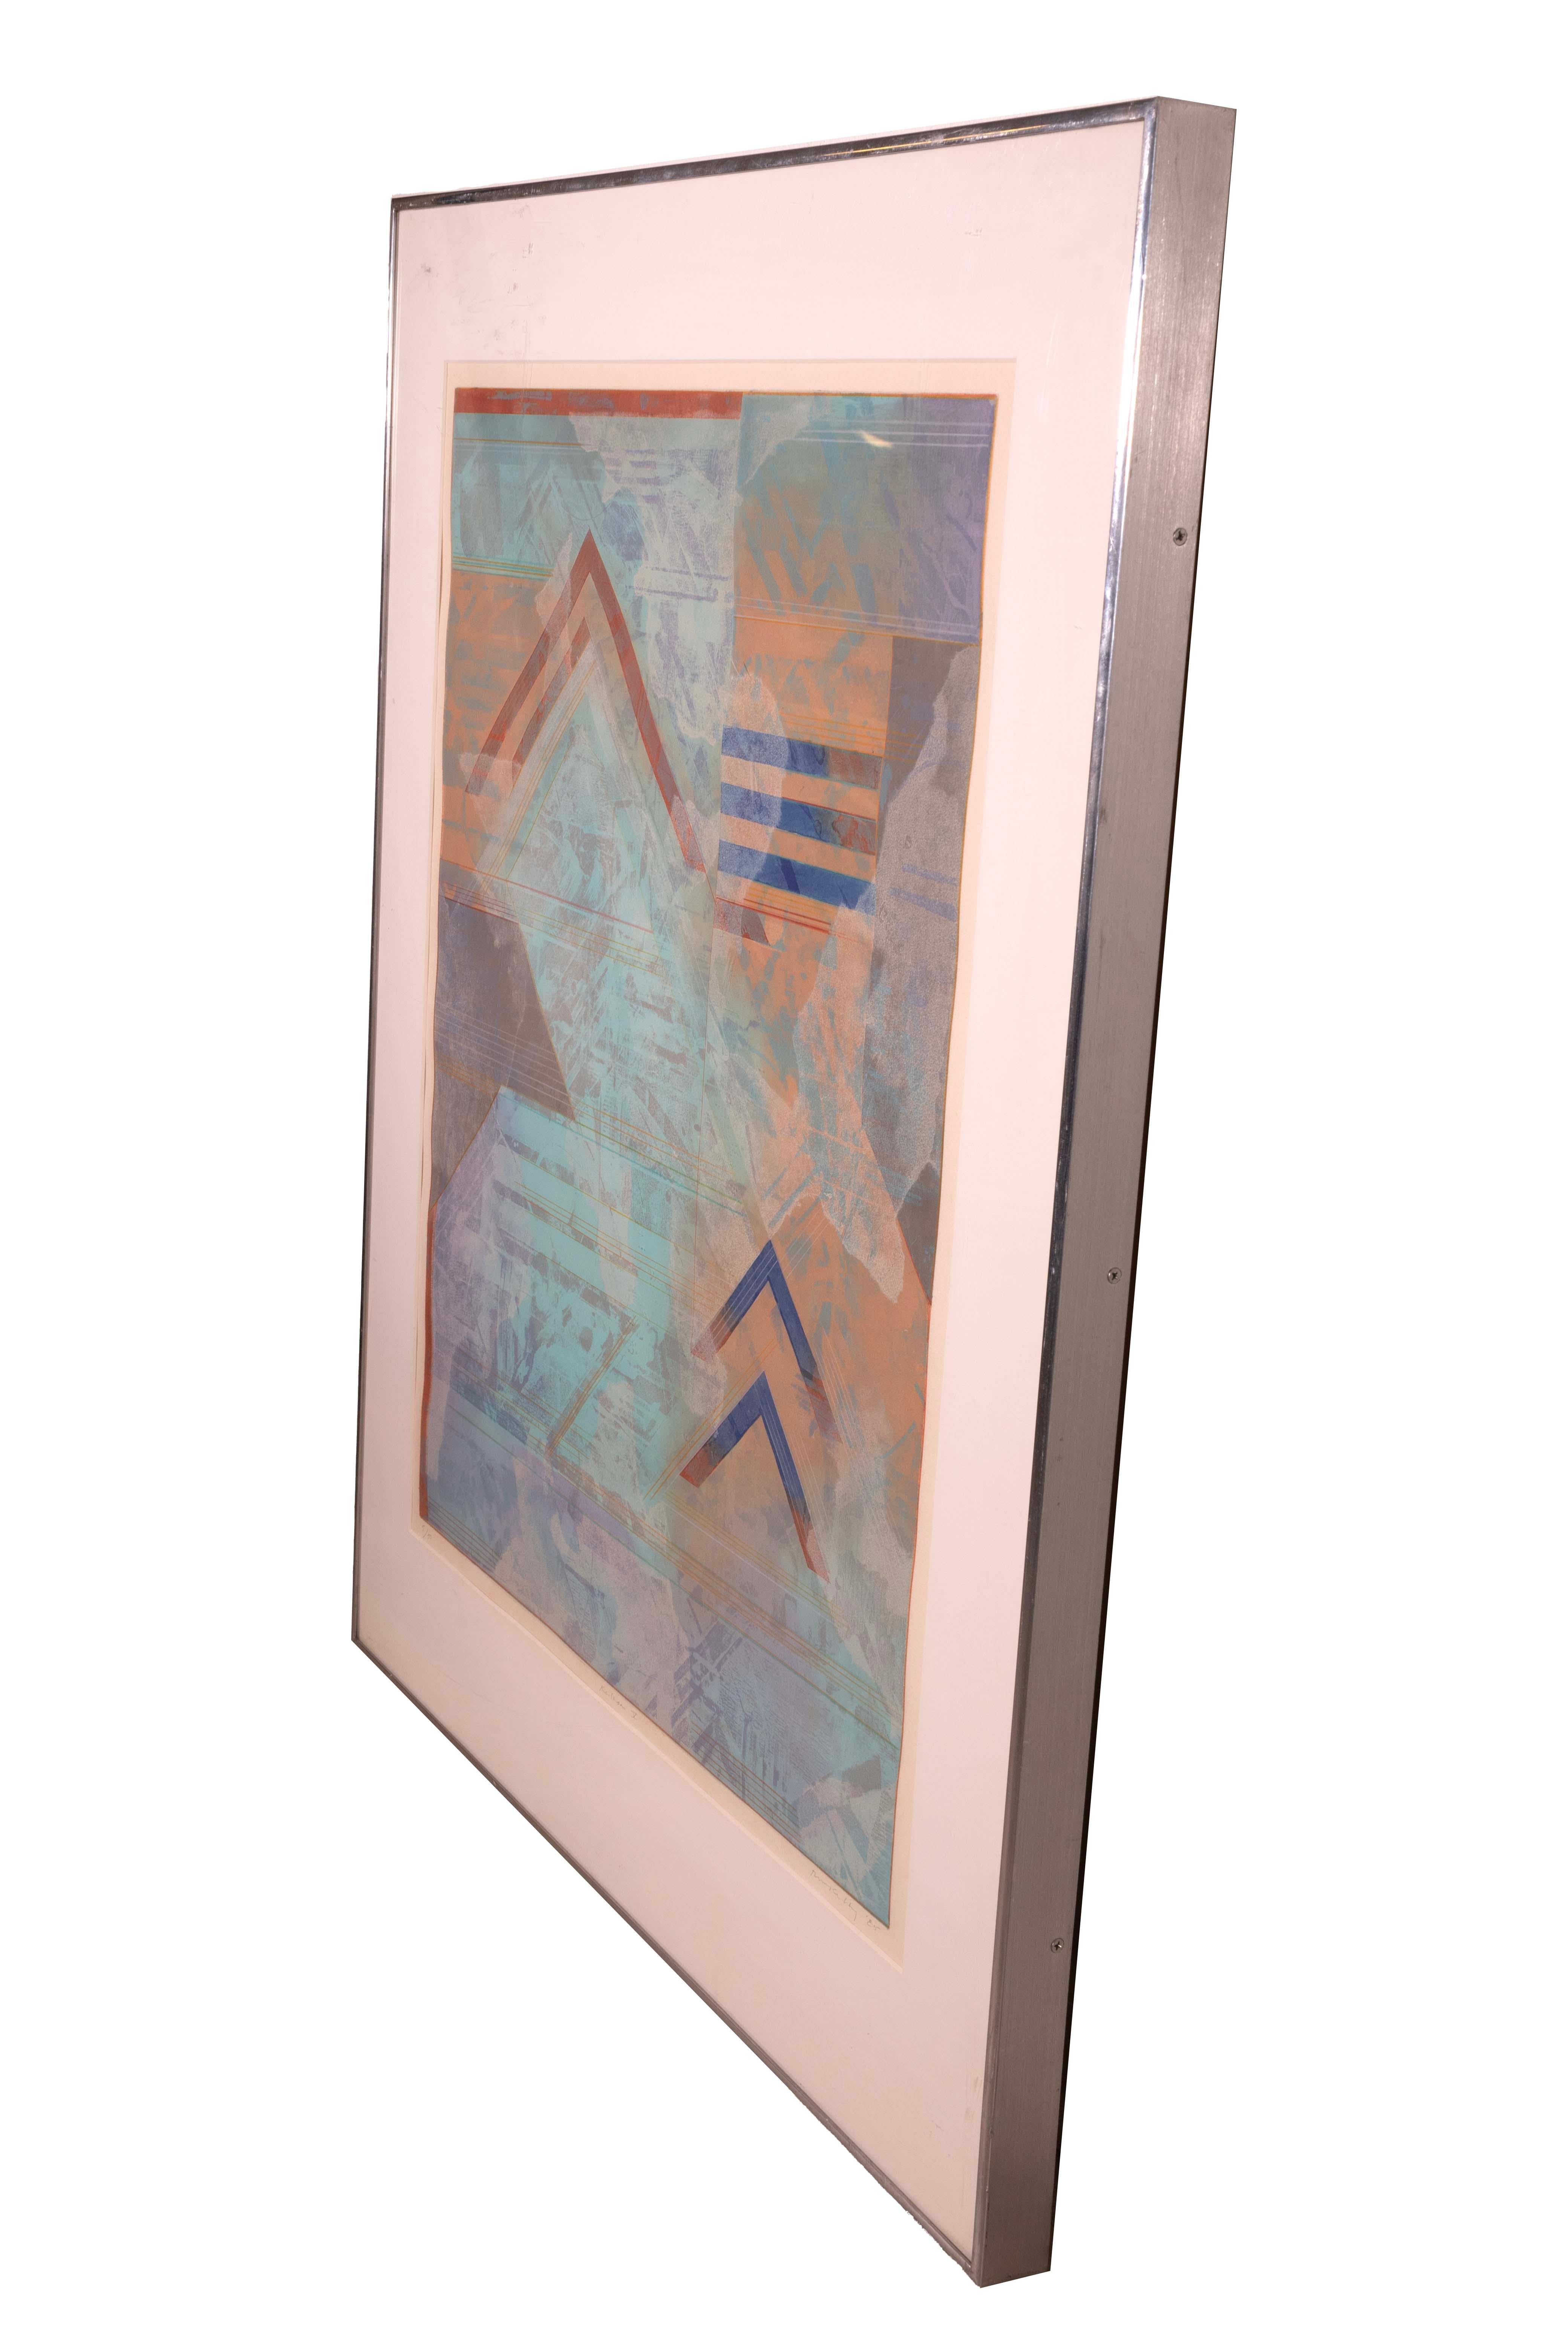 Fin du 20e siècle Robert Kelly Kalasa gravure abstraite moderne à l'aquatinte encadrée 5/50, signée, 1985 en vente